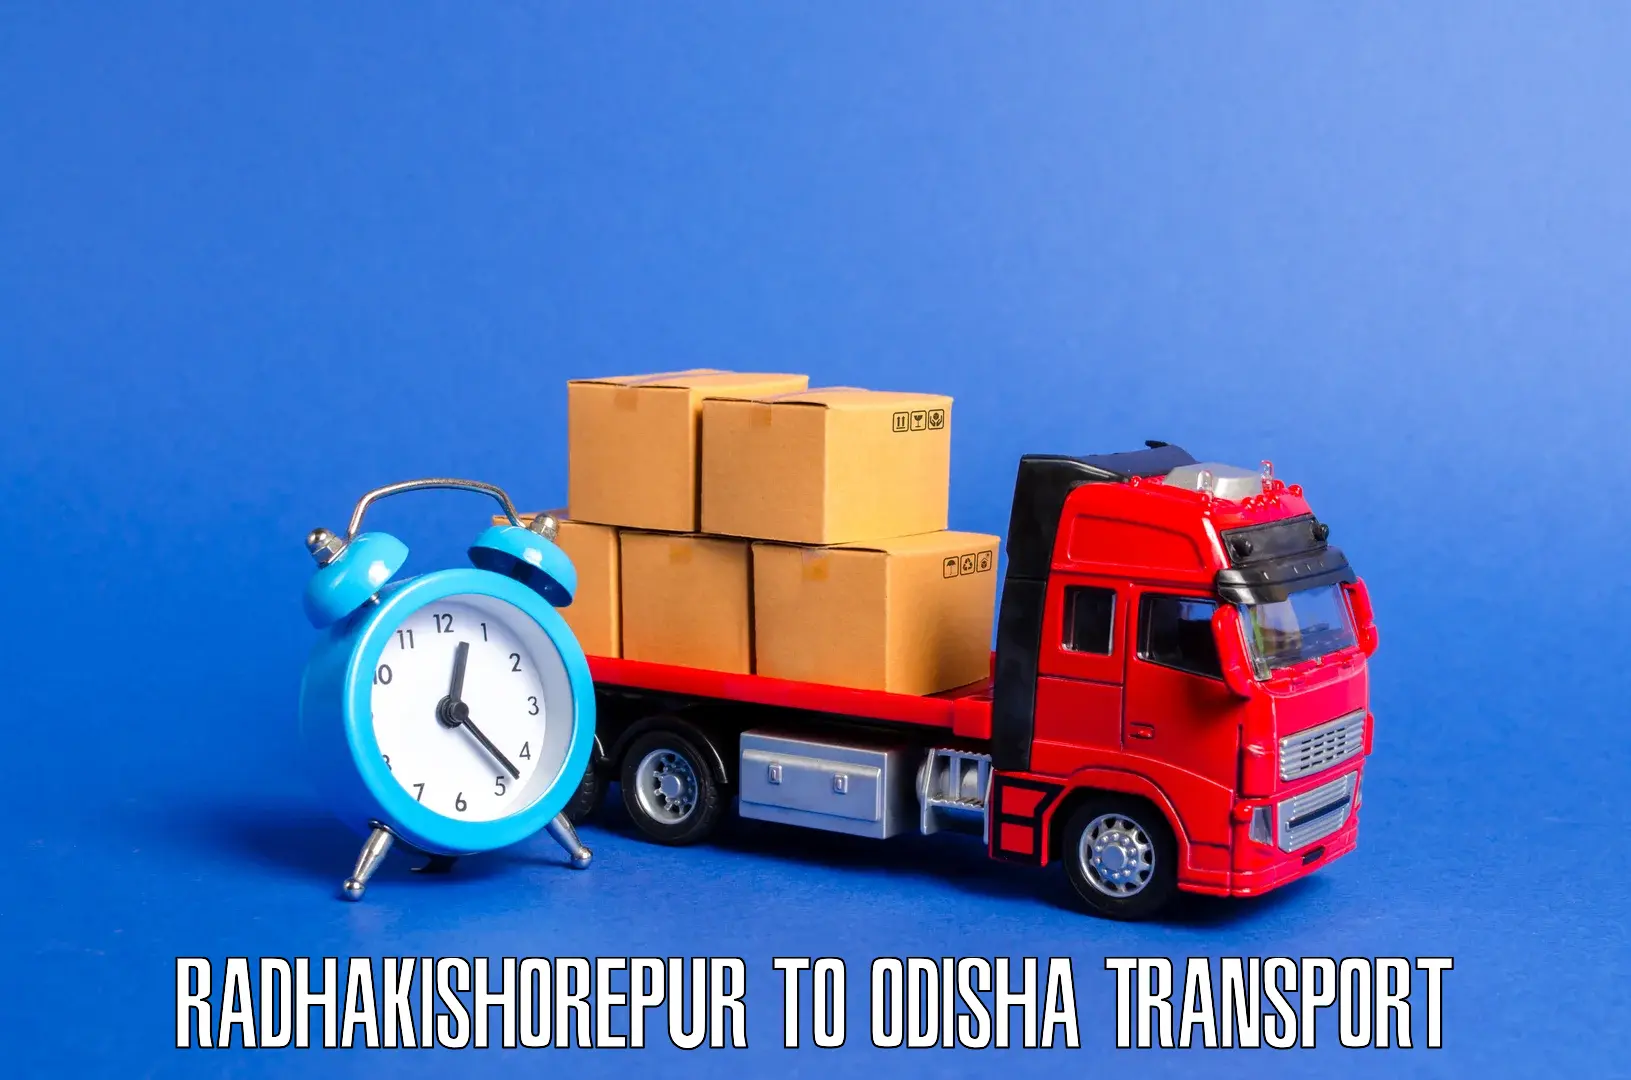 Furniture transport service Radhakishorepur to Chandipur